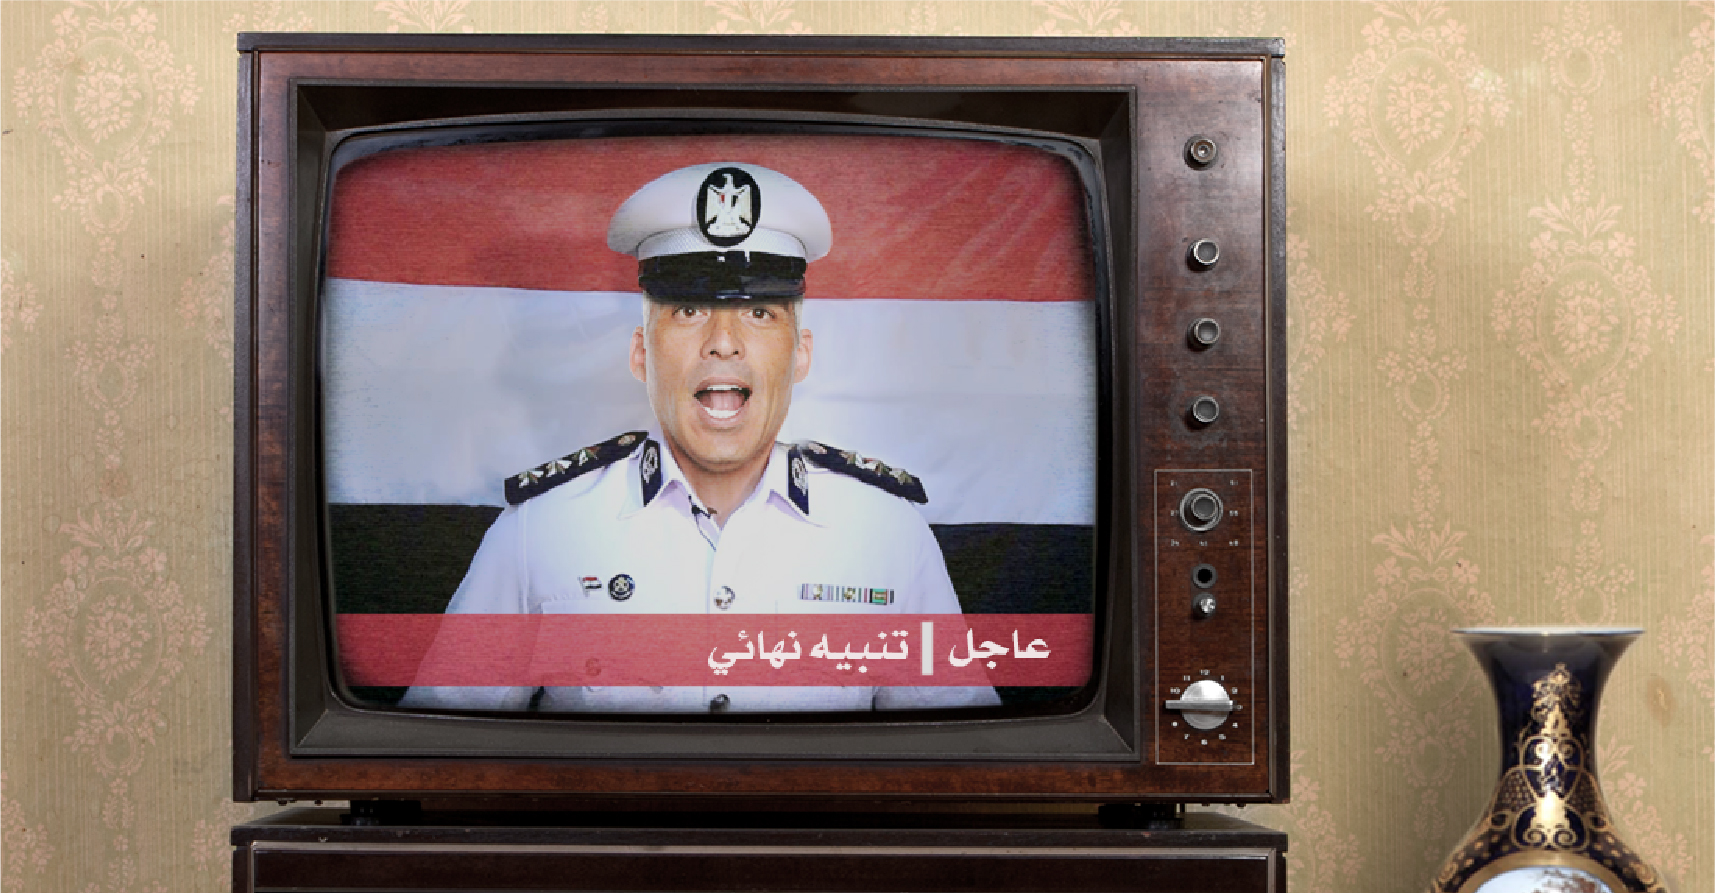 صورة الشرطة المصرية تُعلِم الراغبين بالترشح للرئاسة أنهم سيحصلون على حكم مُخفّف إن سلموا أنفسهم طوعاً